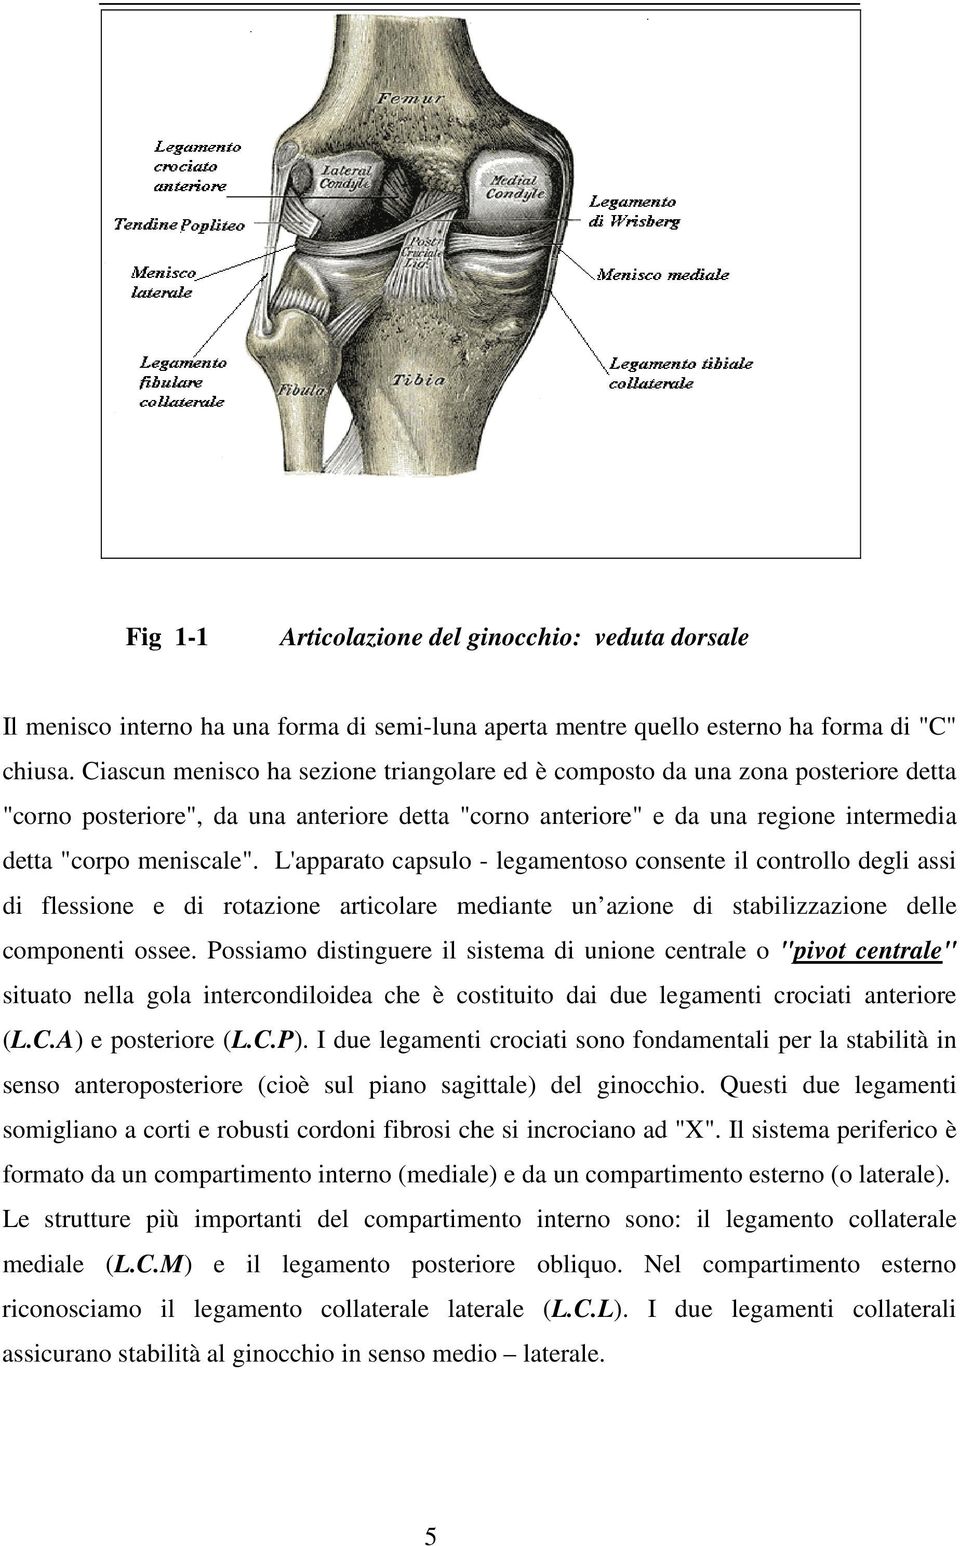 L'apparato capsulo - legamentoso consente il controllo degli assi di flessione e di rotazione articolare mediante un azione di stabilizzazione delle componenti ossee.